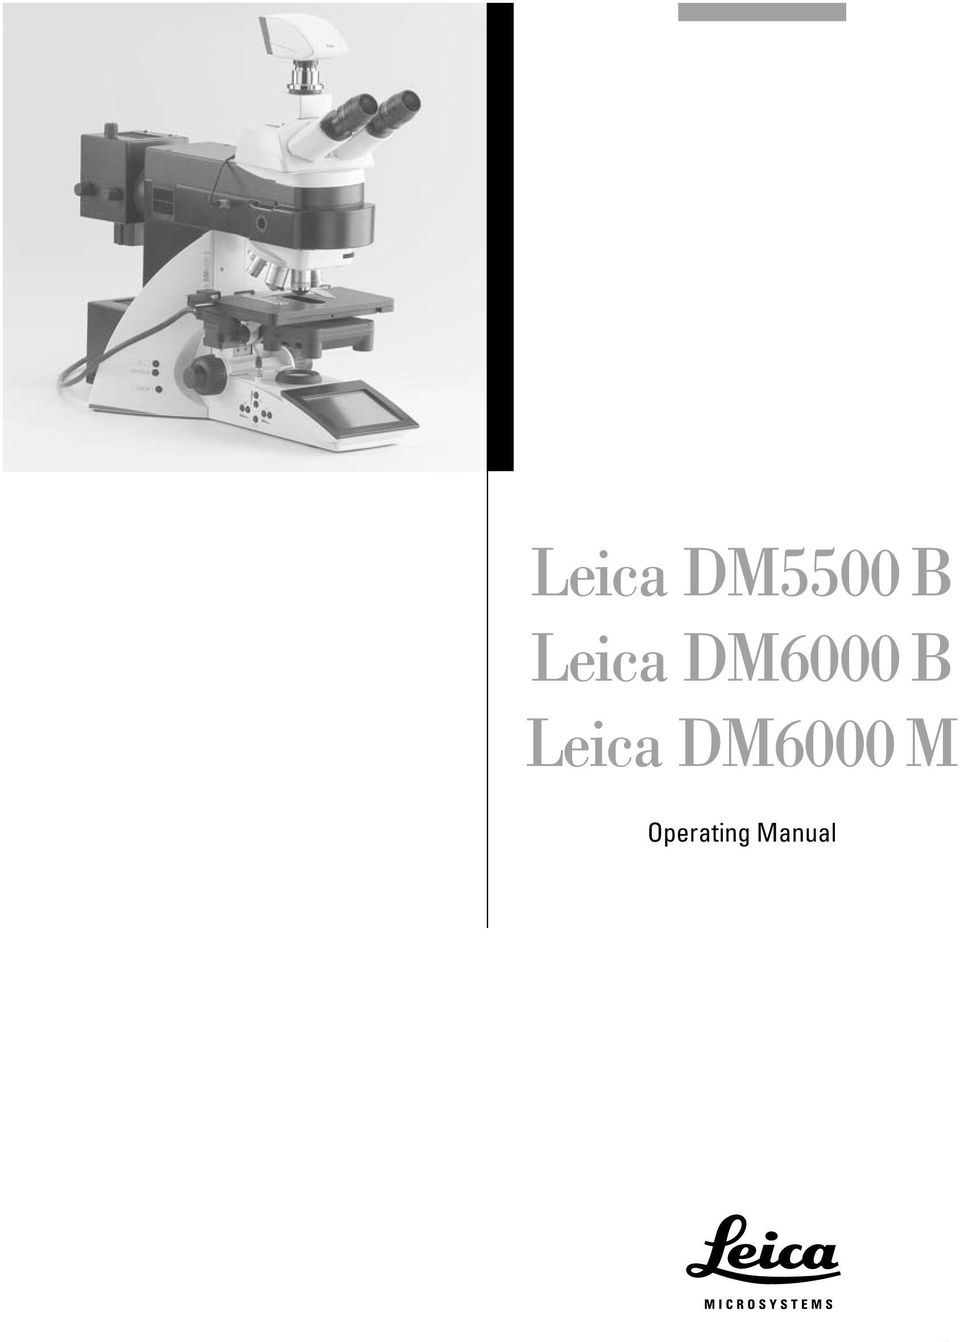 Leica DM6000 M